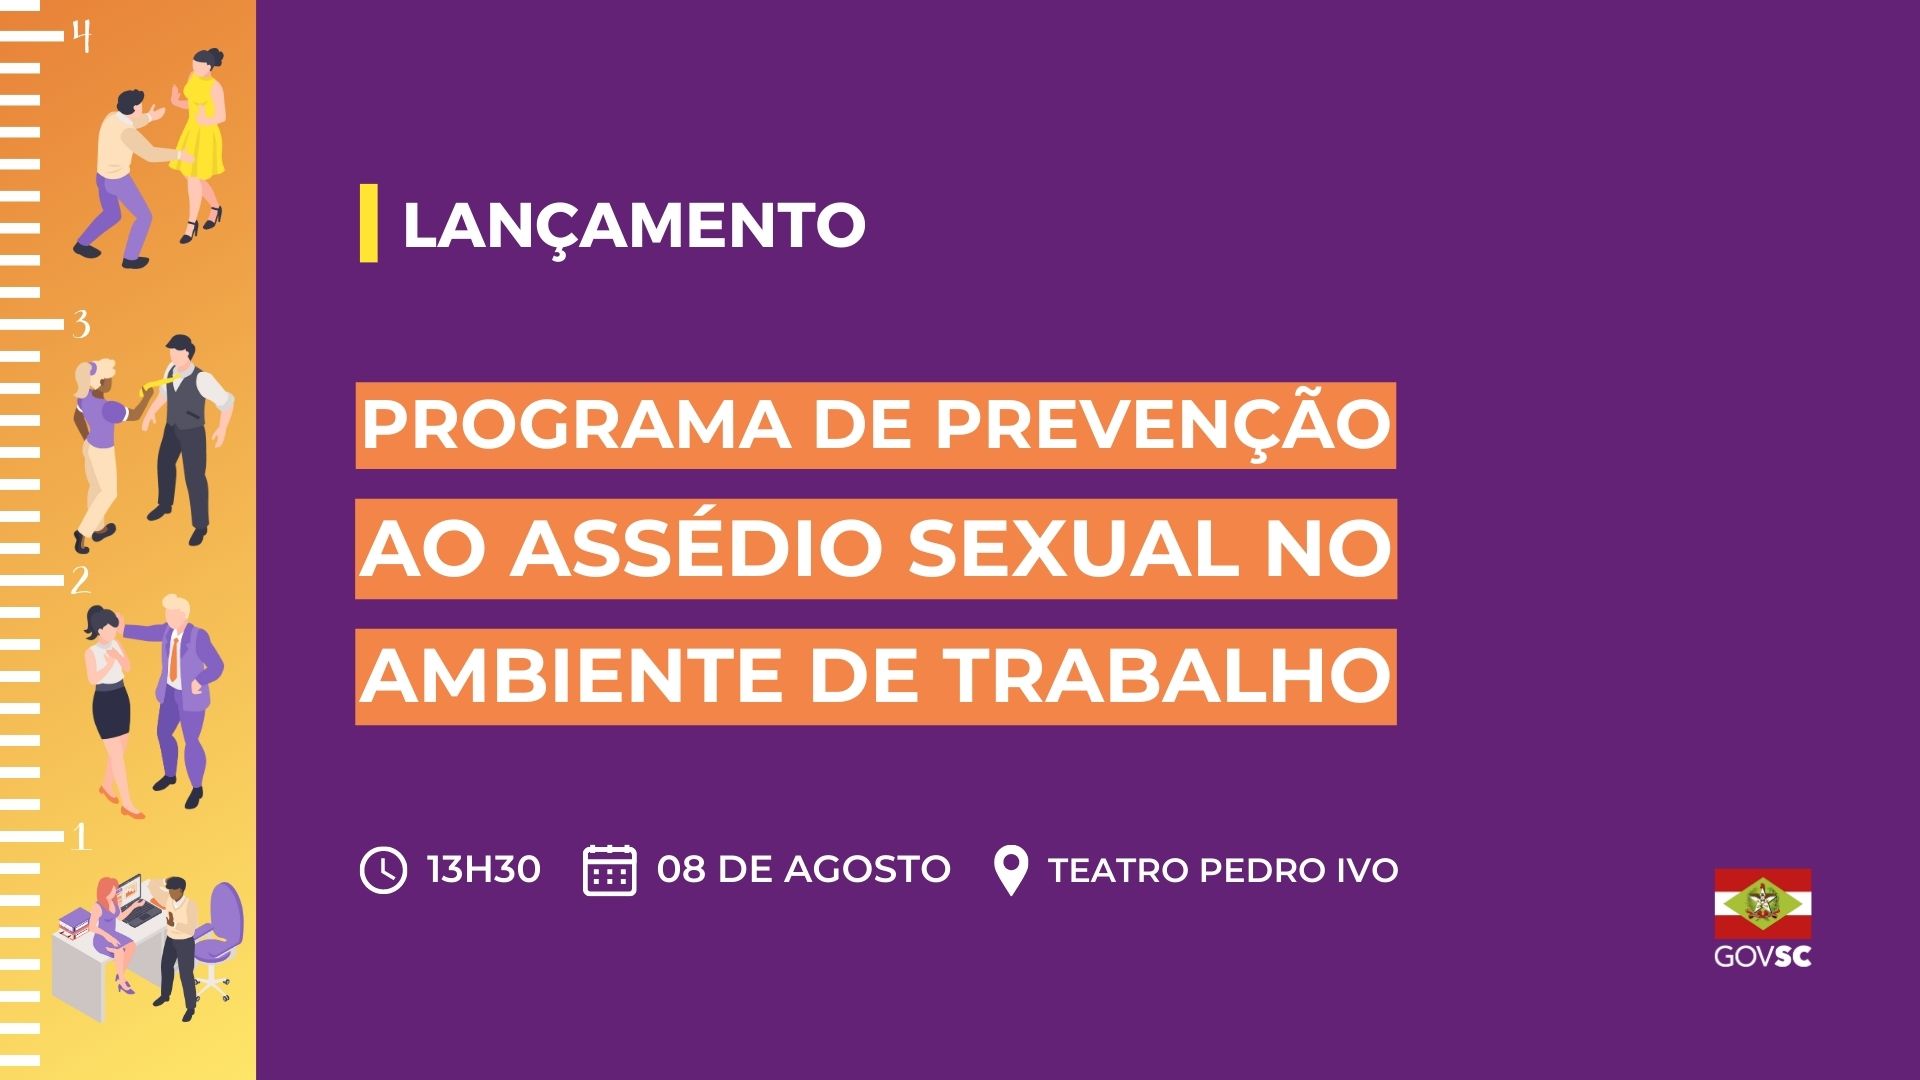 Governo do Estado lança nesta terça-feira programa para prevenir assédio sexual